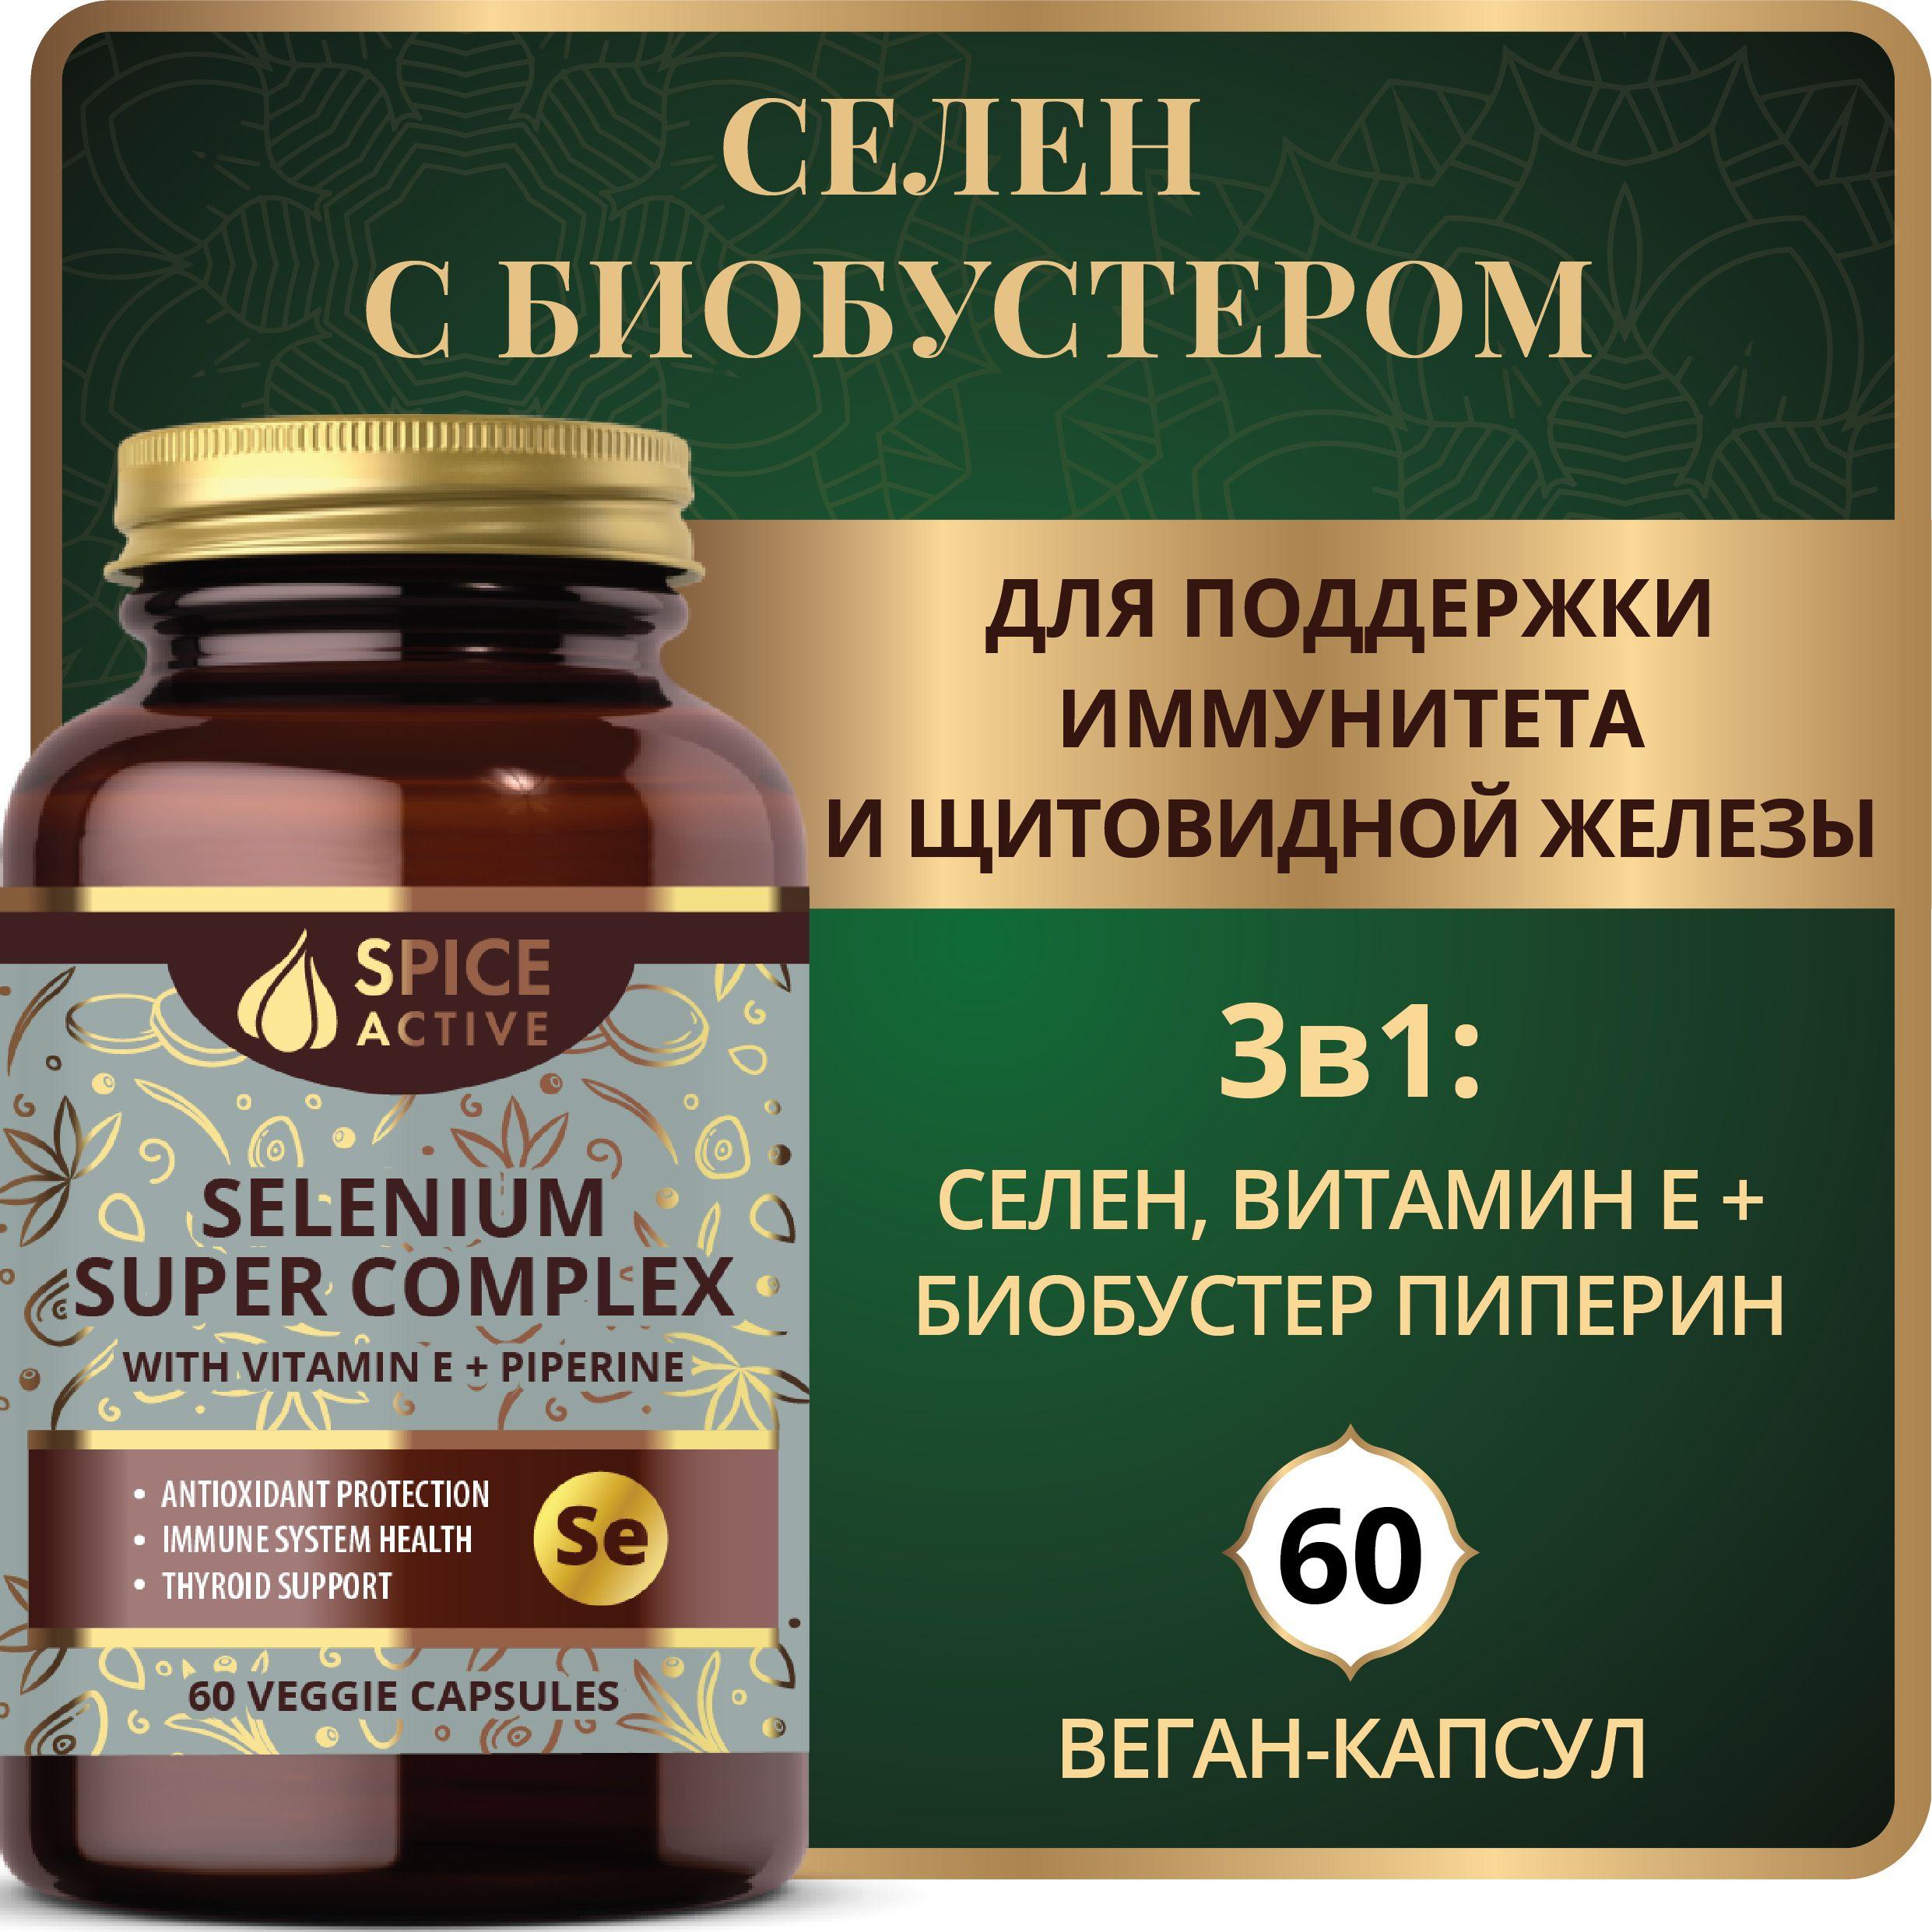 Селен суперкомплекс с витамином Е Spice Active и пиперином, 60 капсул, для иммунитета, для щитовидной железы, БАД